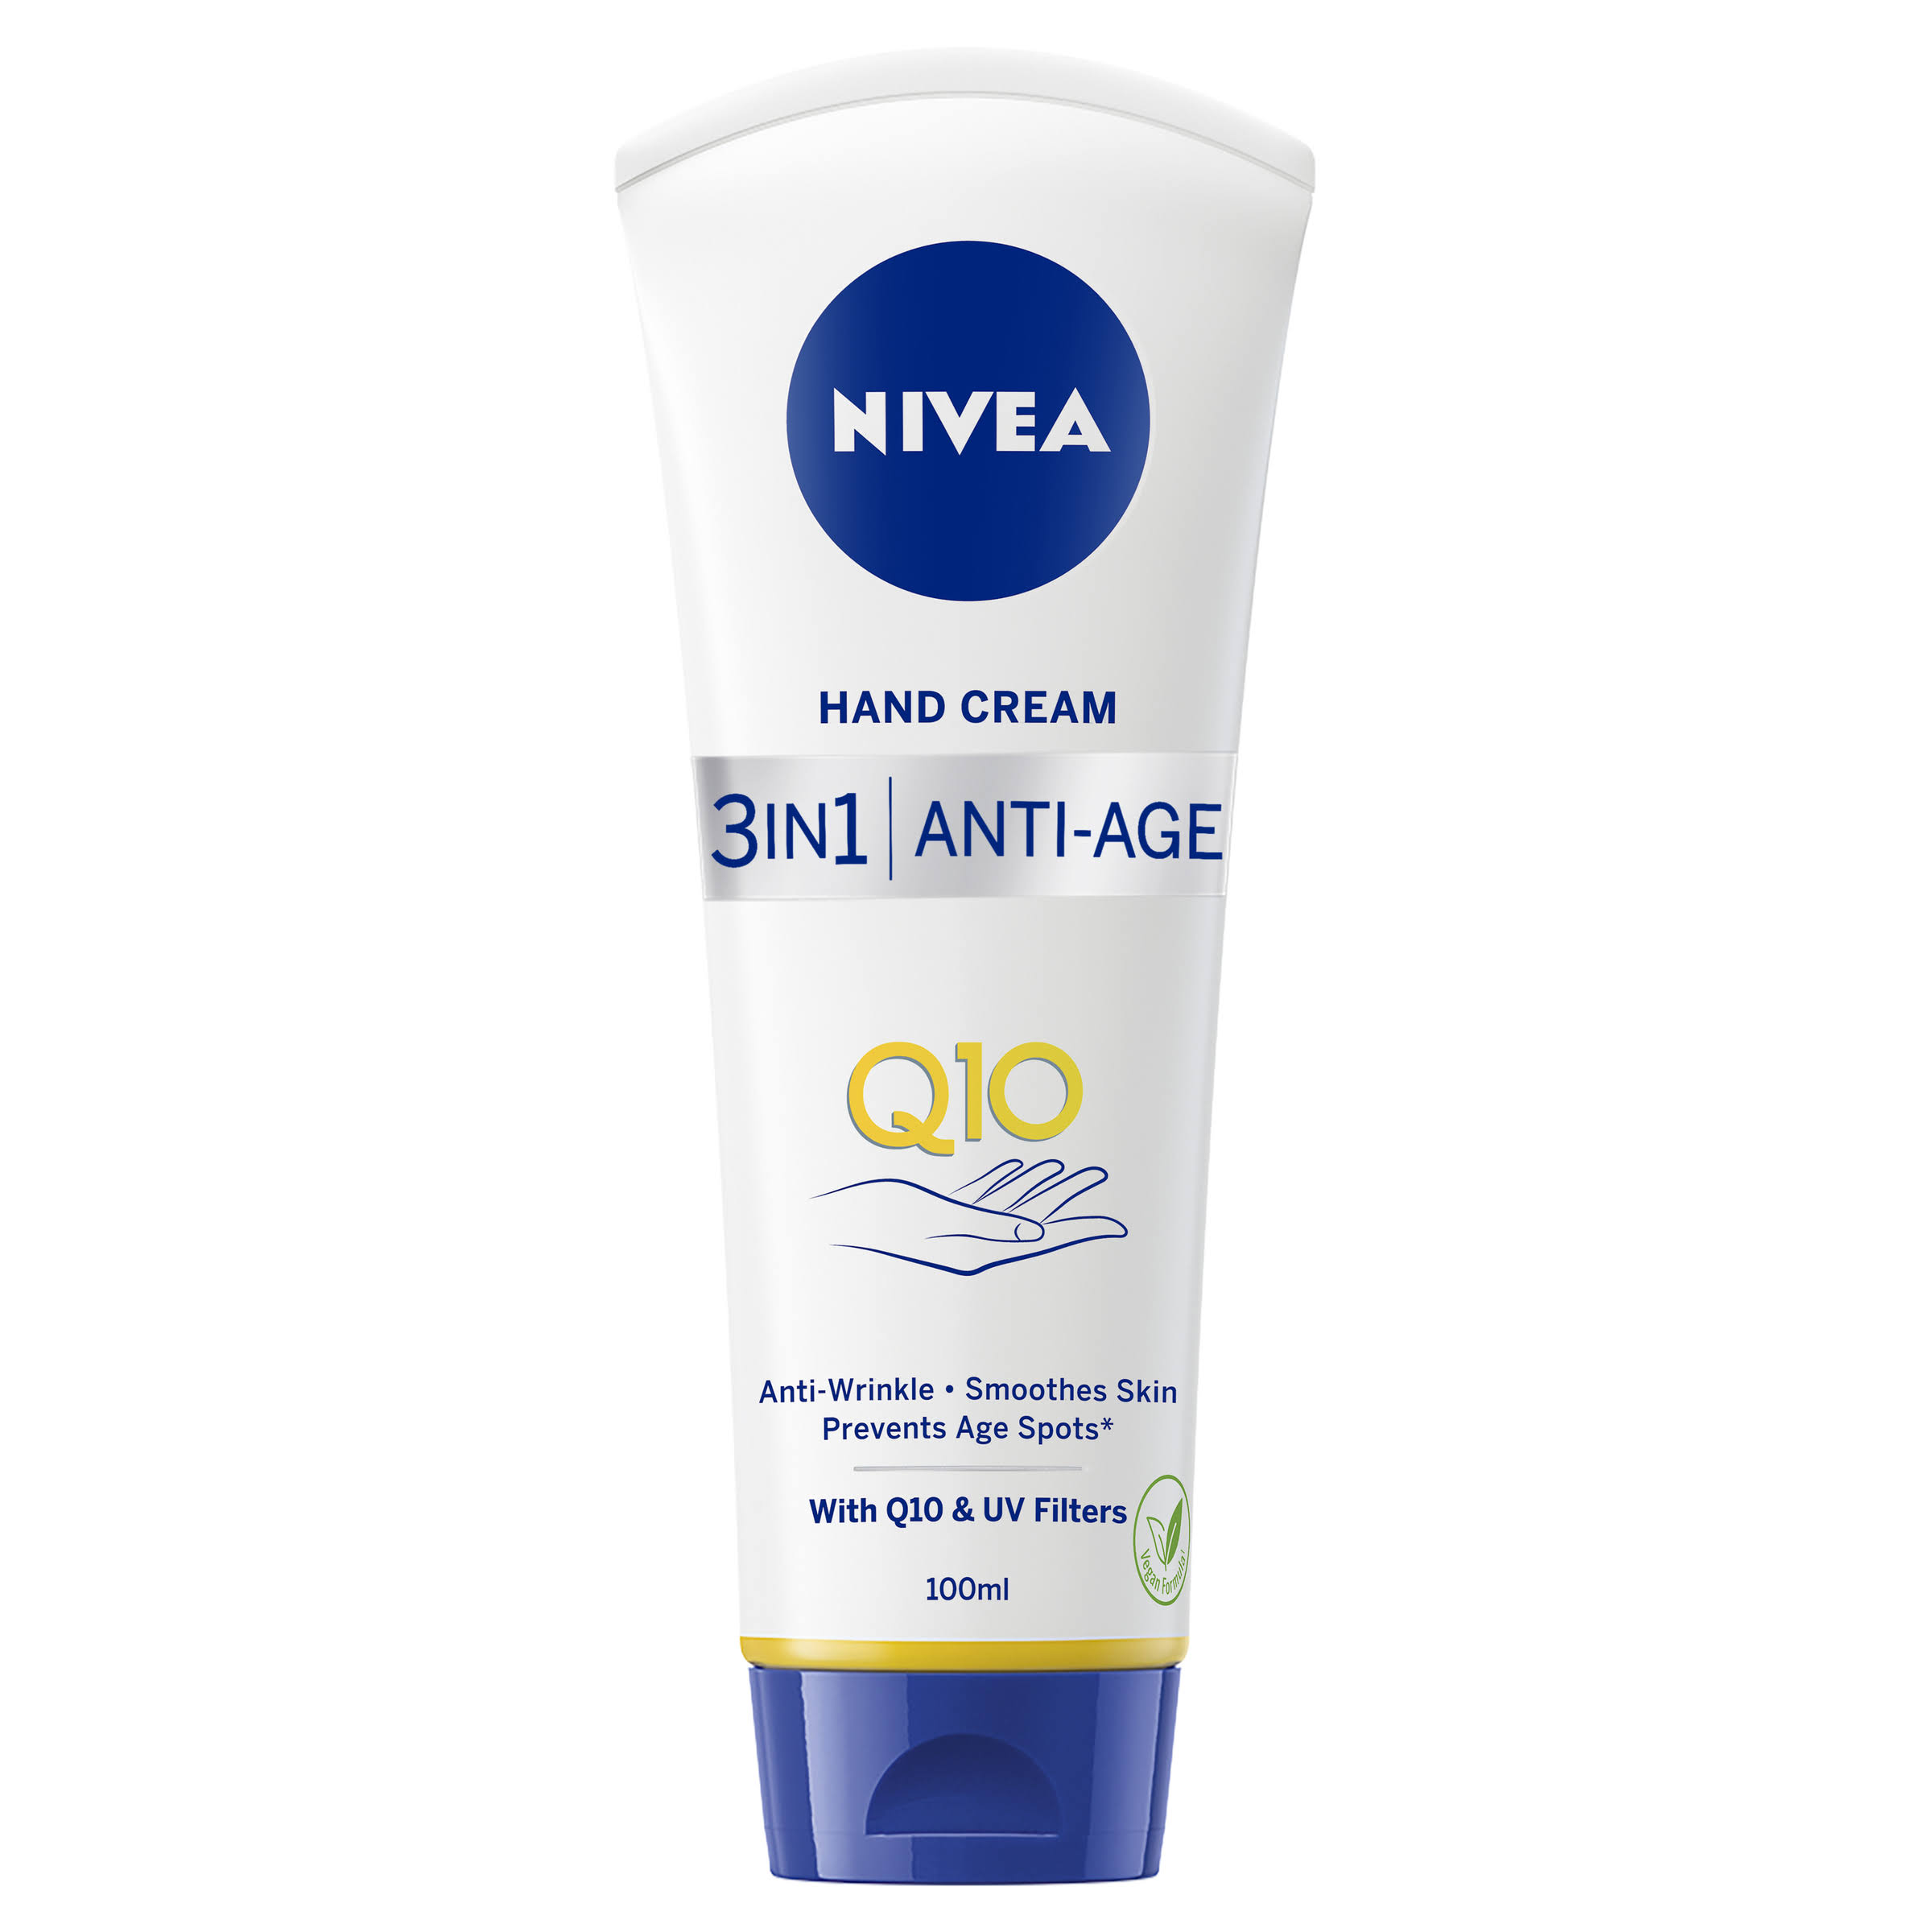 Nivea Hand Cream 3 in 1 Anti-Age Q10 100ml